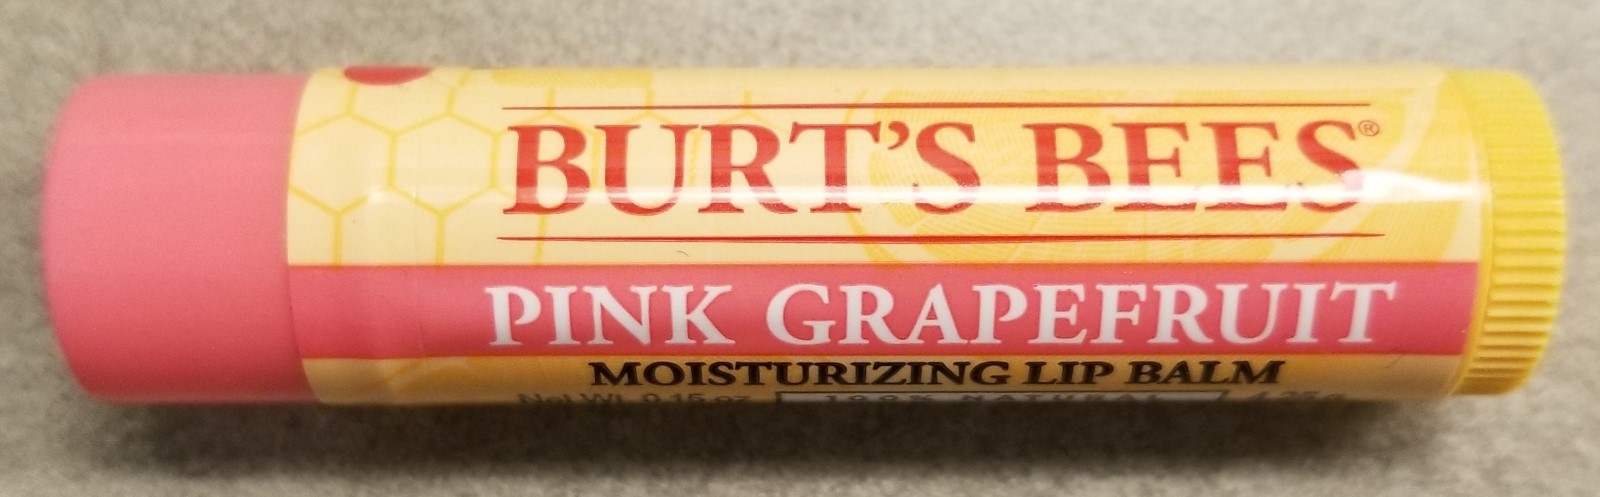 图伯特的蜜蜂唇膏:粉红葡萄柚